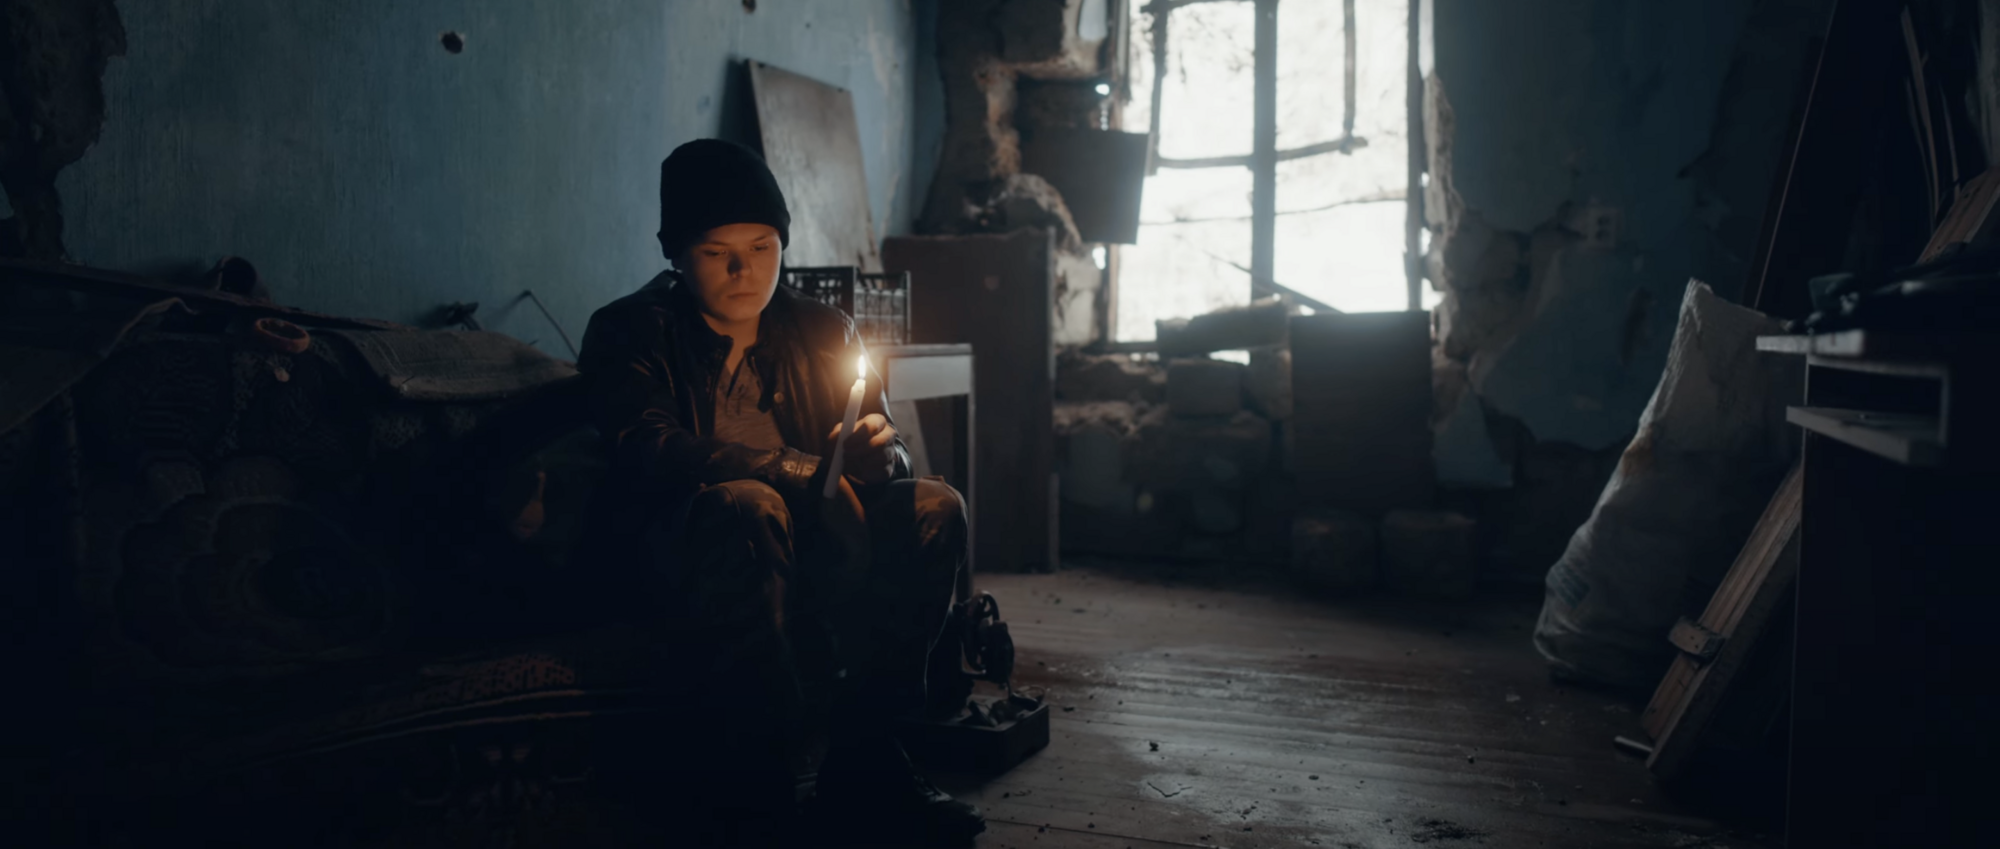 Imagine Dragons сняли клип в деоккупированном украинском селе и рассказали историю 14-летнего Саши, потерявшего все